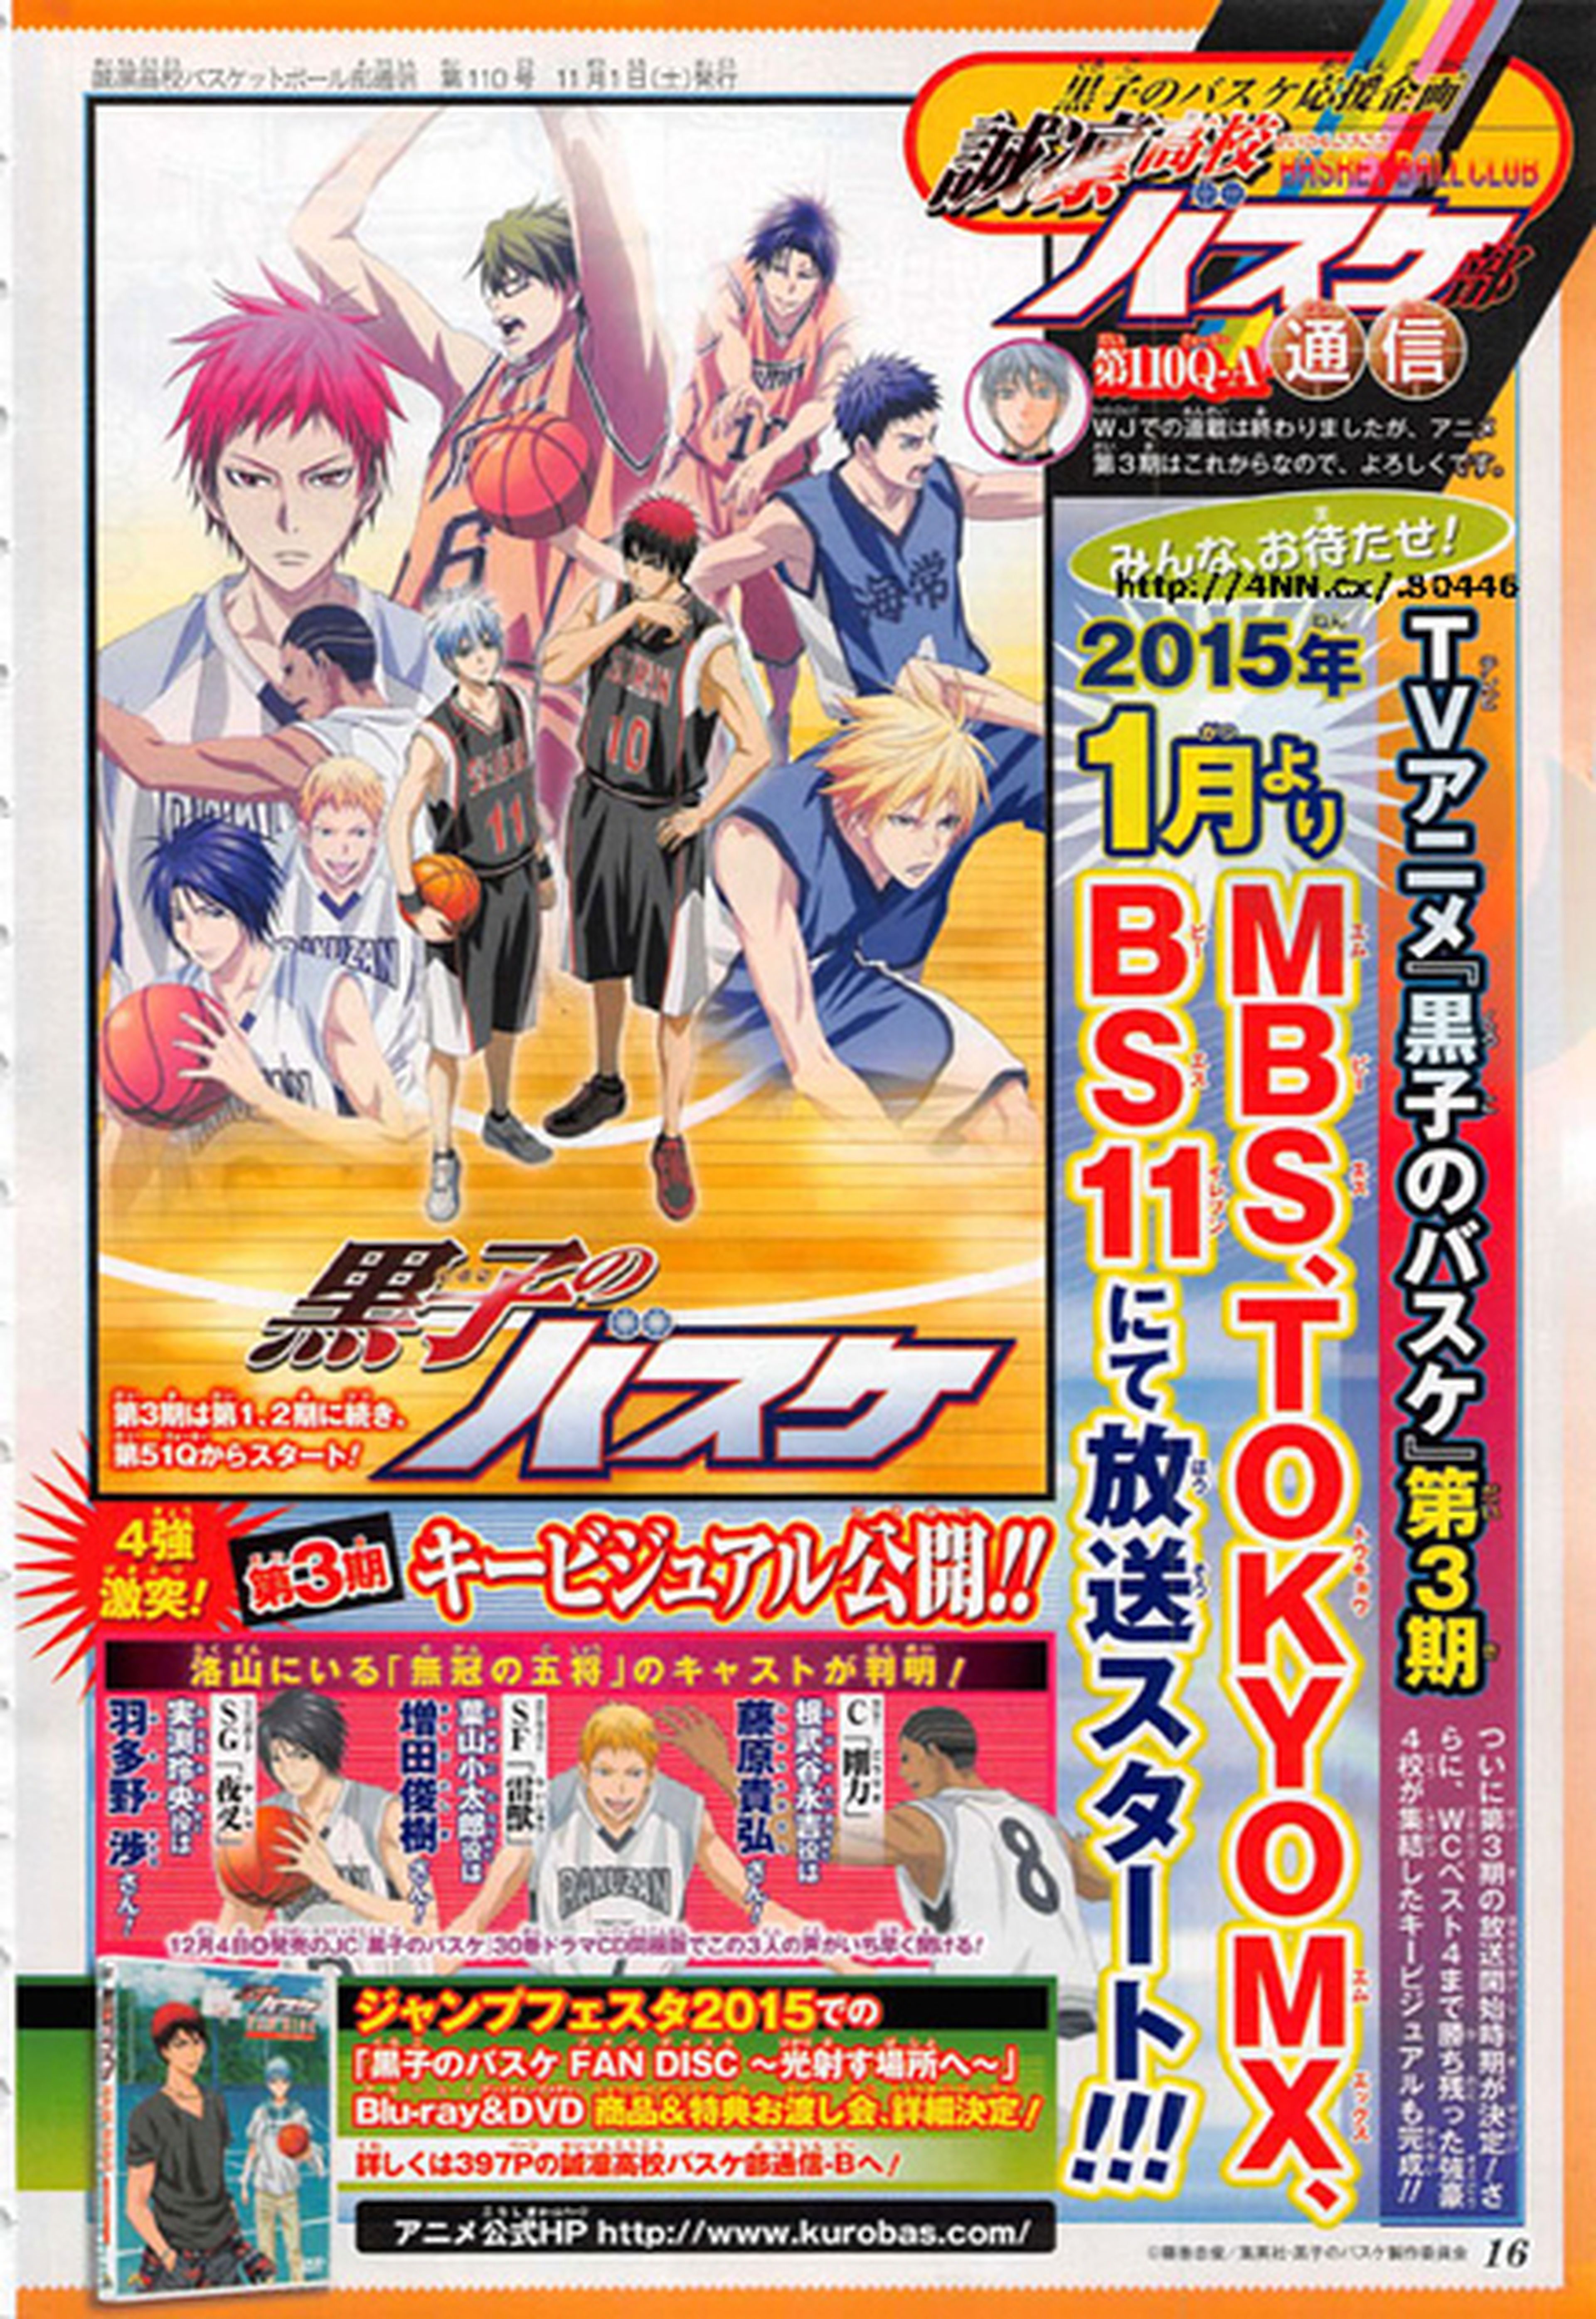 La 3ª temporada de Kuroko no Basket, en enero